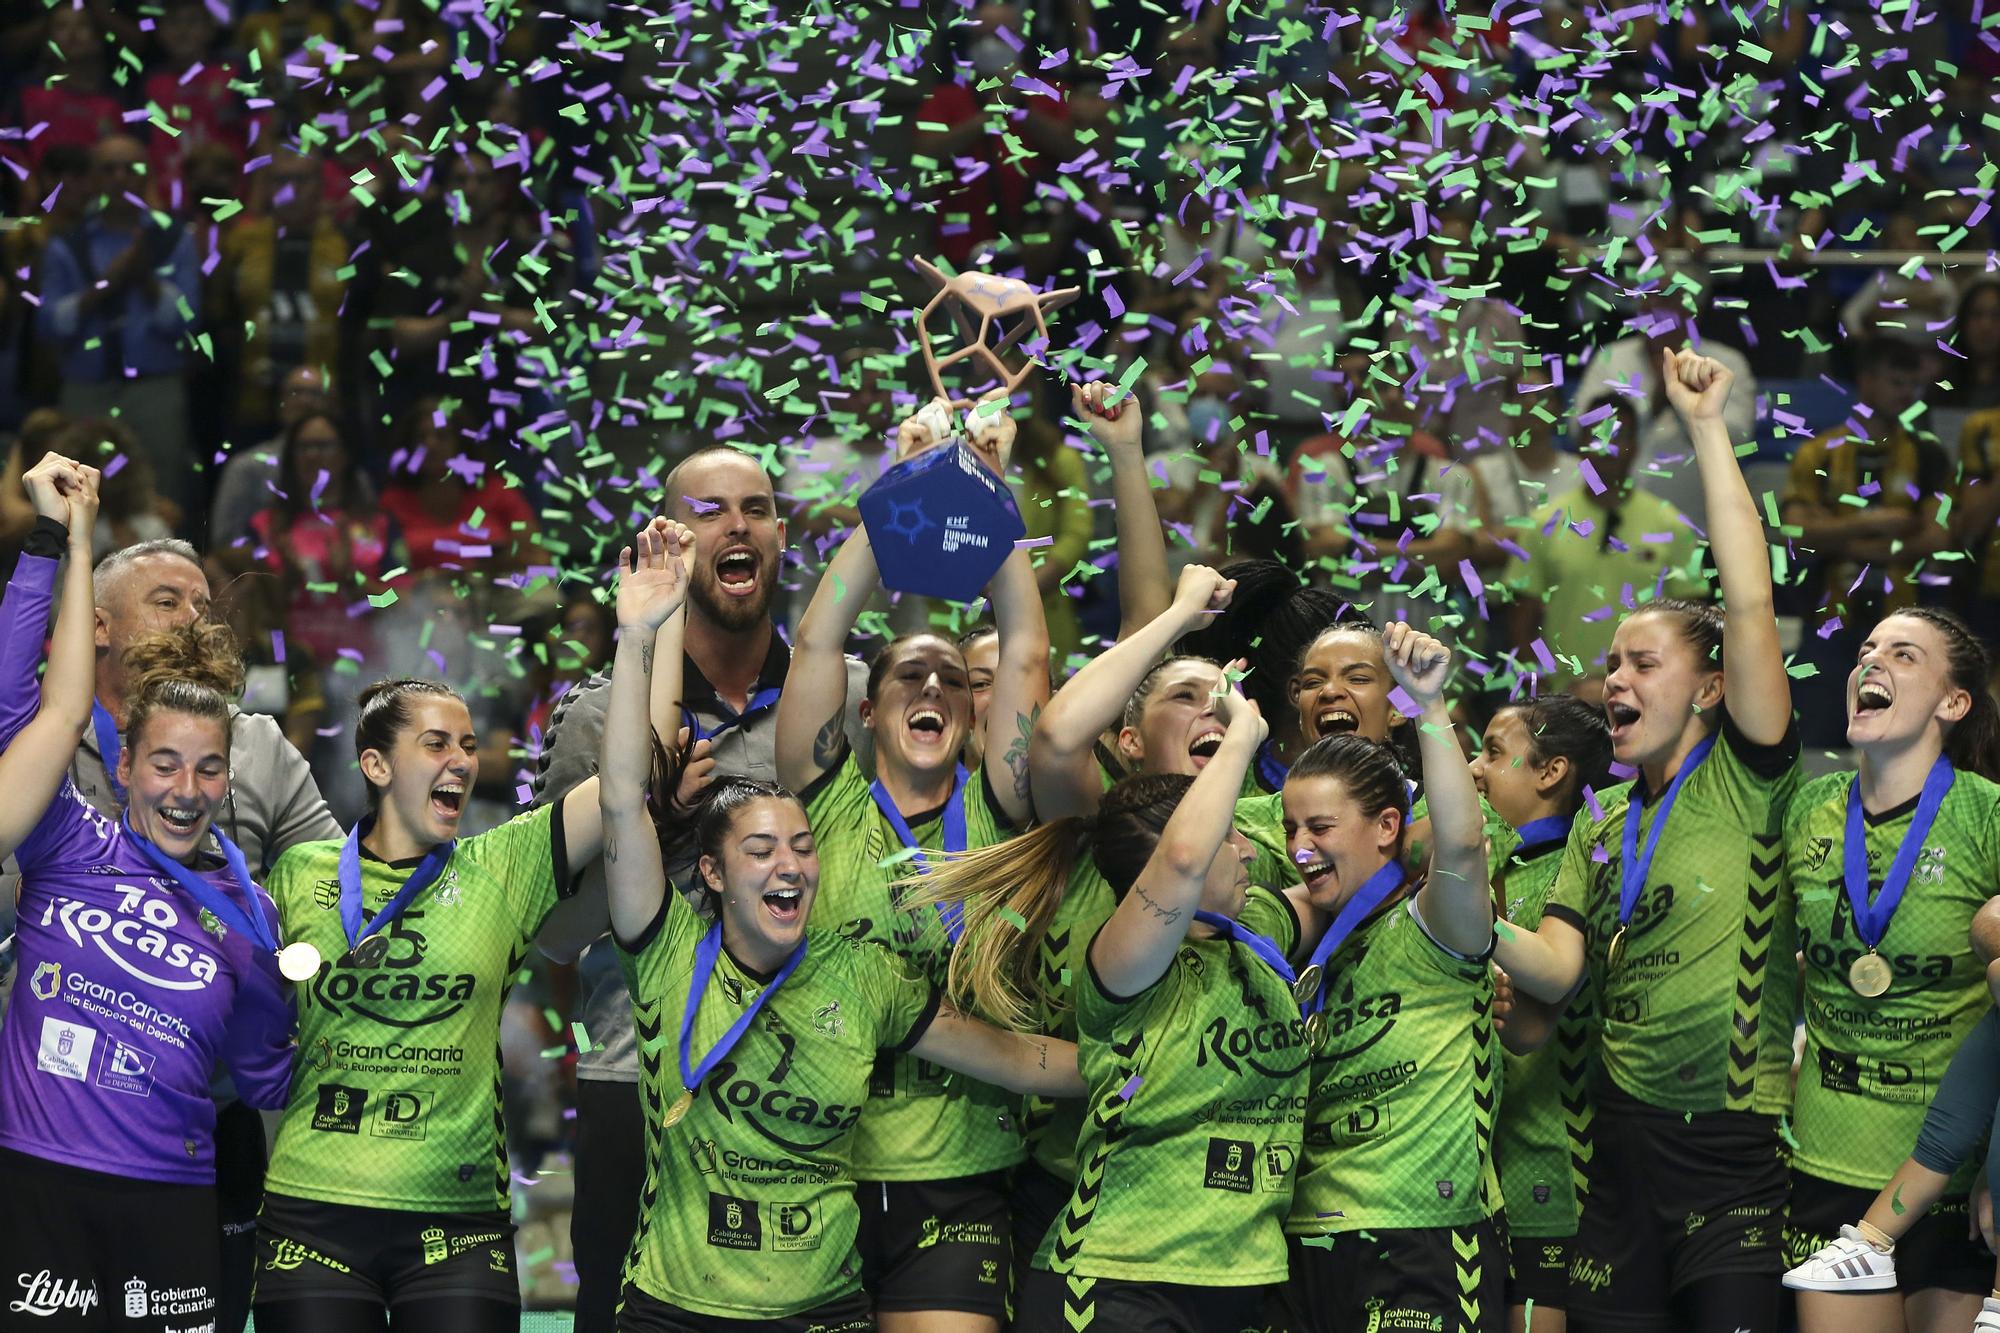 El Rocasa conquista la EHF European Cup